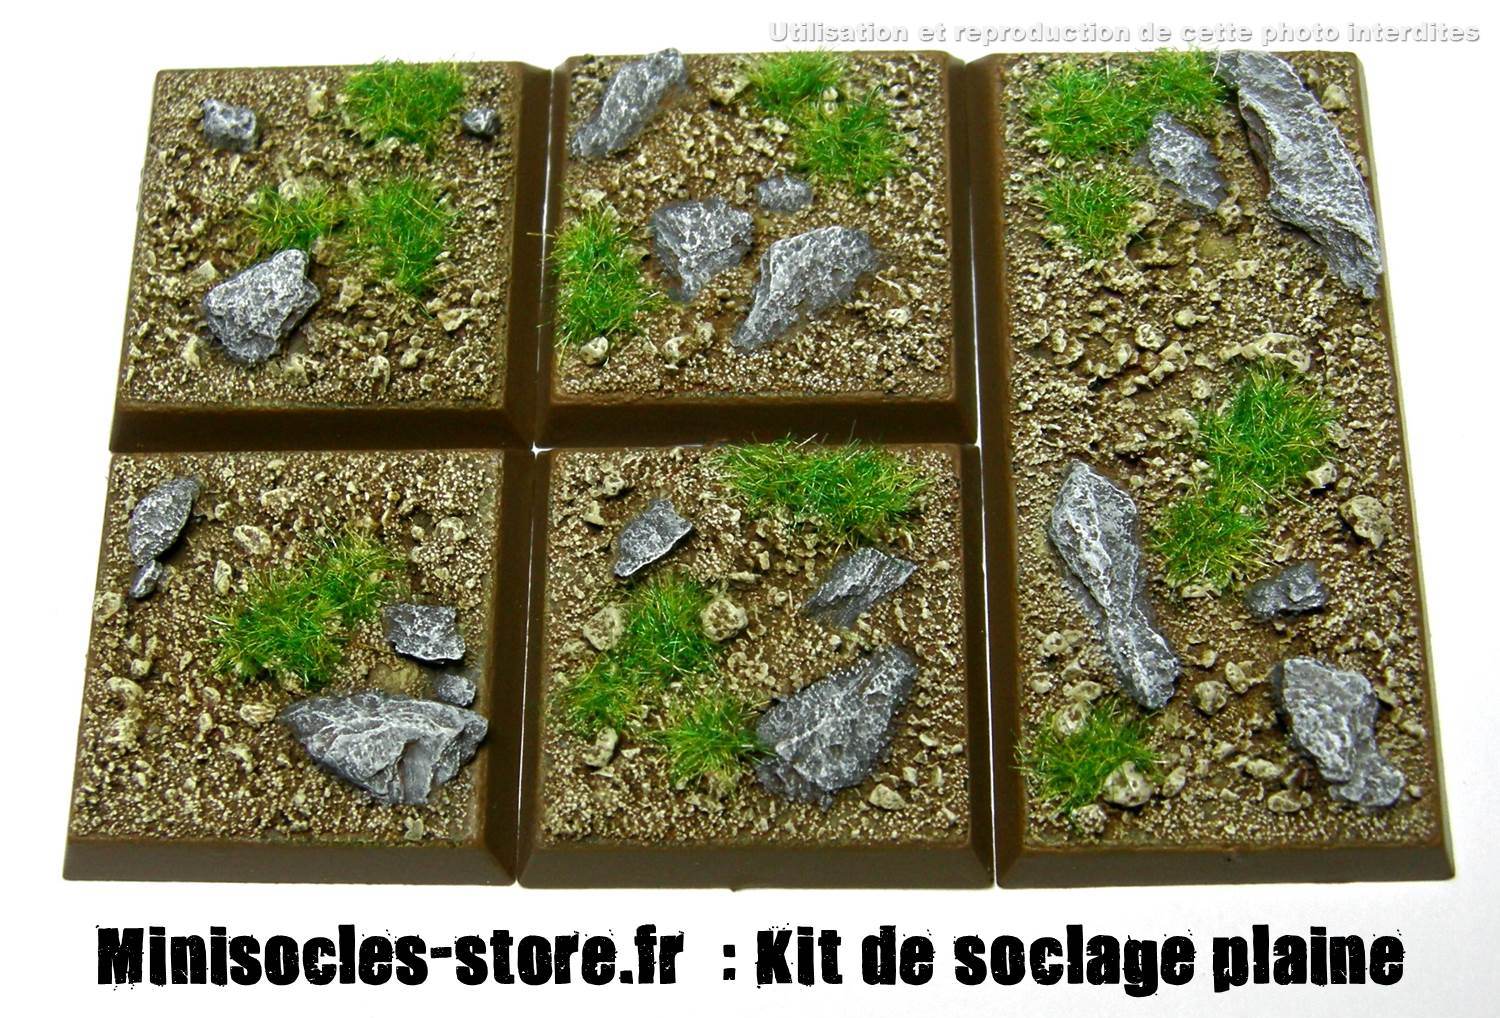 Kit de soclage sol lunaire - Minisocles-store